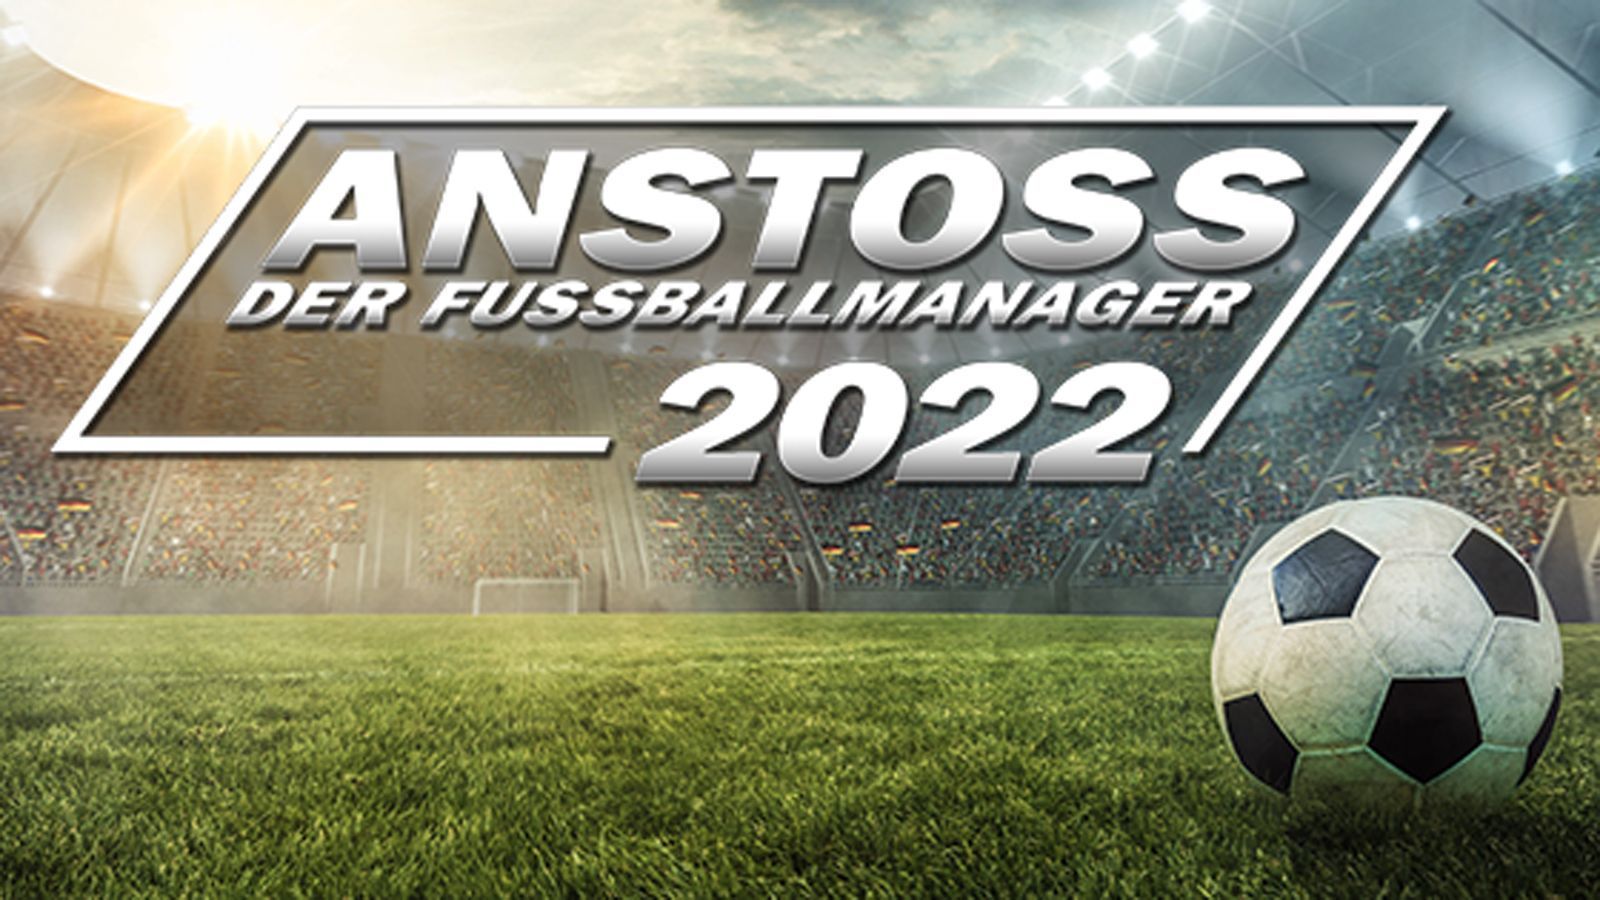 Anstoss 2022 – der Fussballmanager 